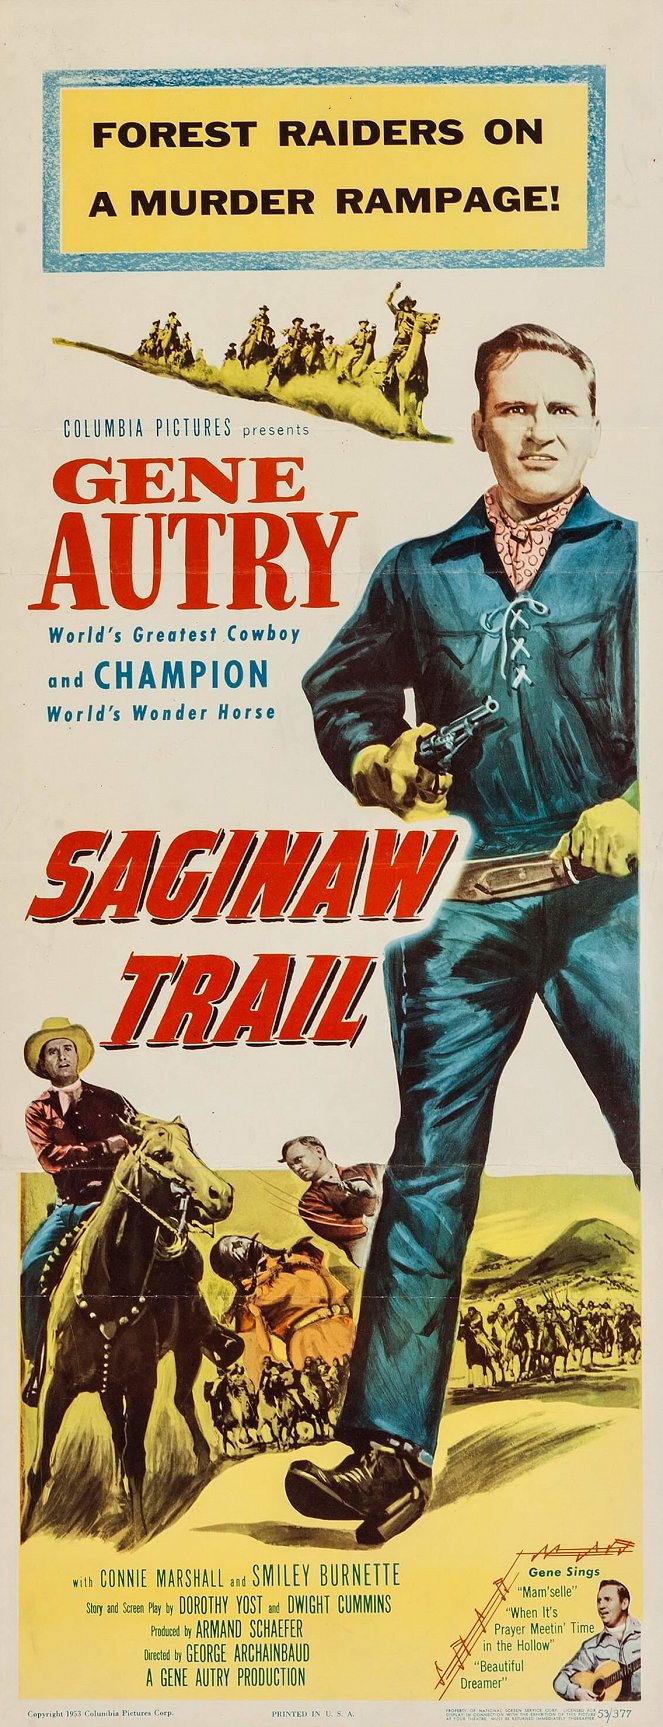 Saginaw Trail - Plakáty